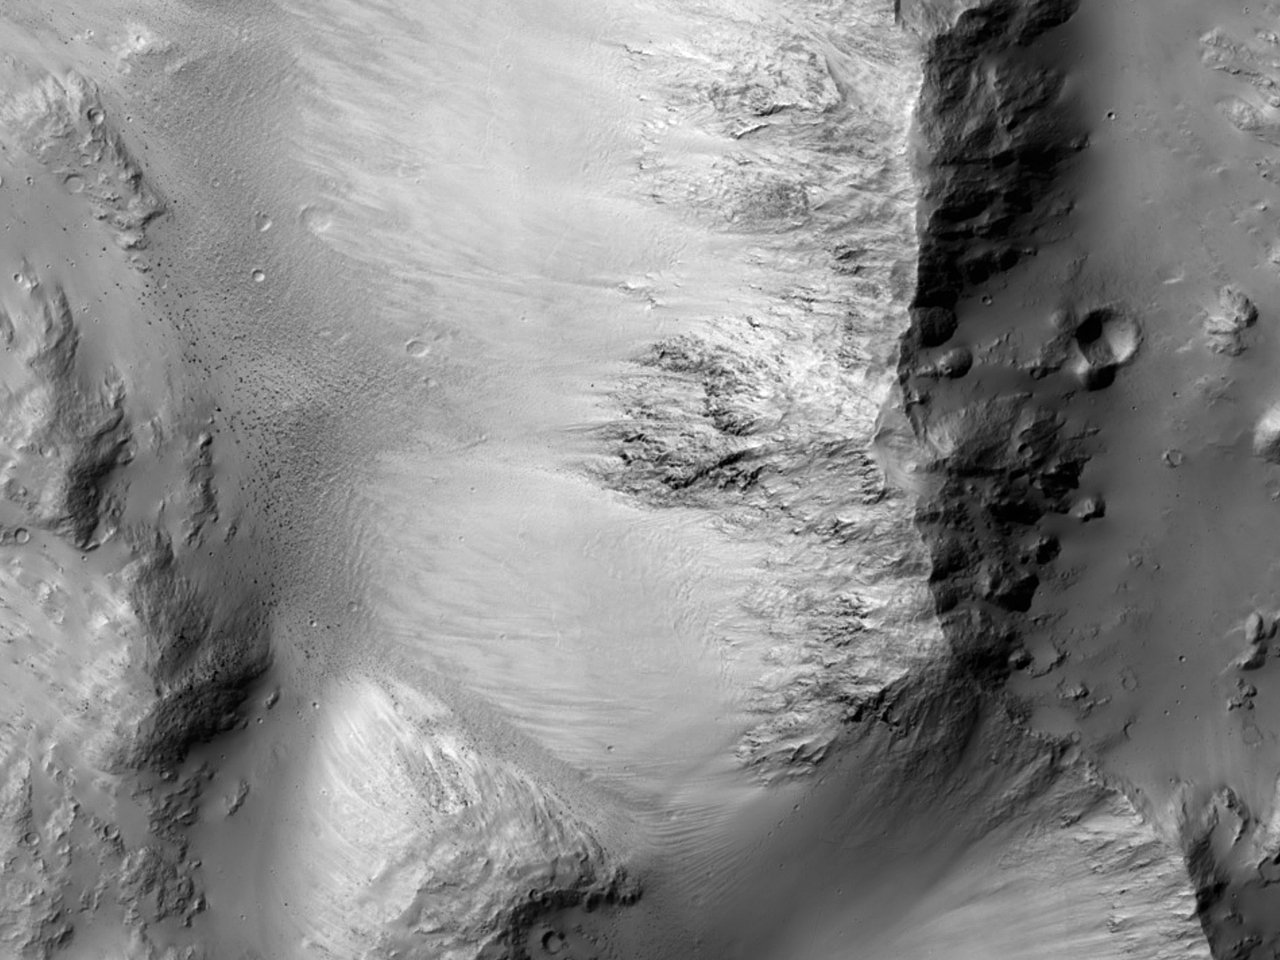 Eastern Rim of a Crater in Terra Cimmeria